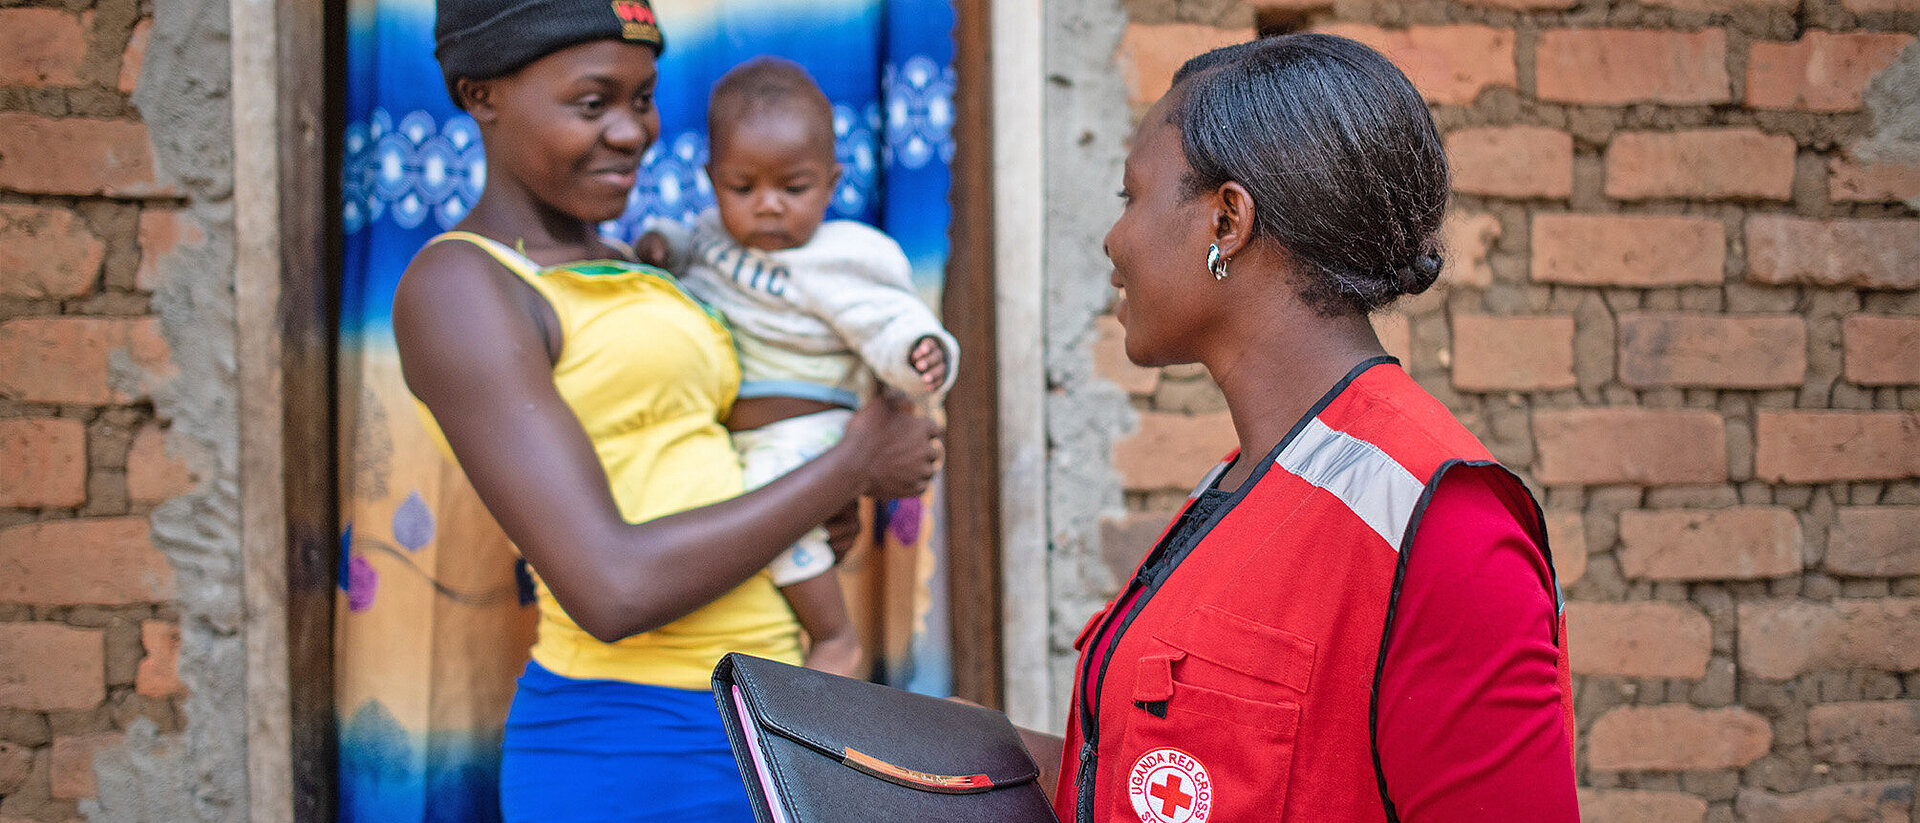 Rotkreuzmitarbeiterin in Uganda unterwegs für Flüchtlingsprojekt